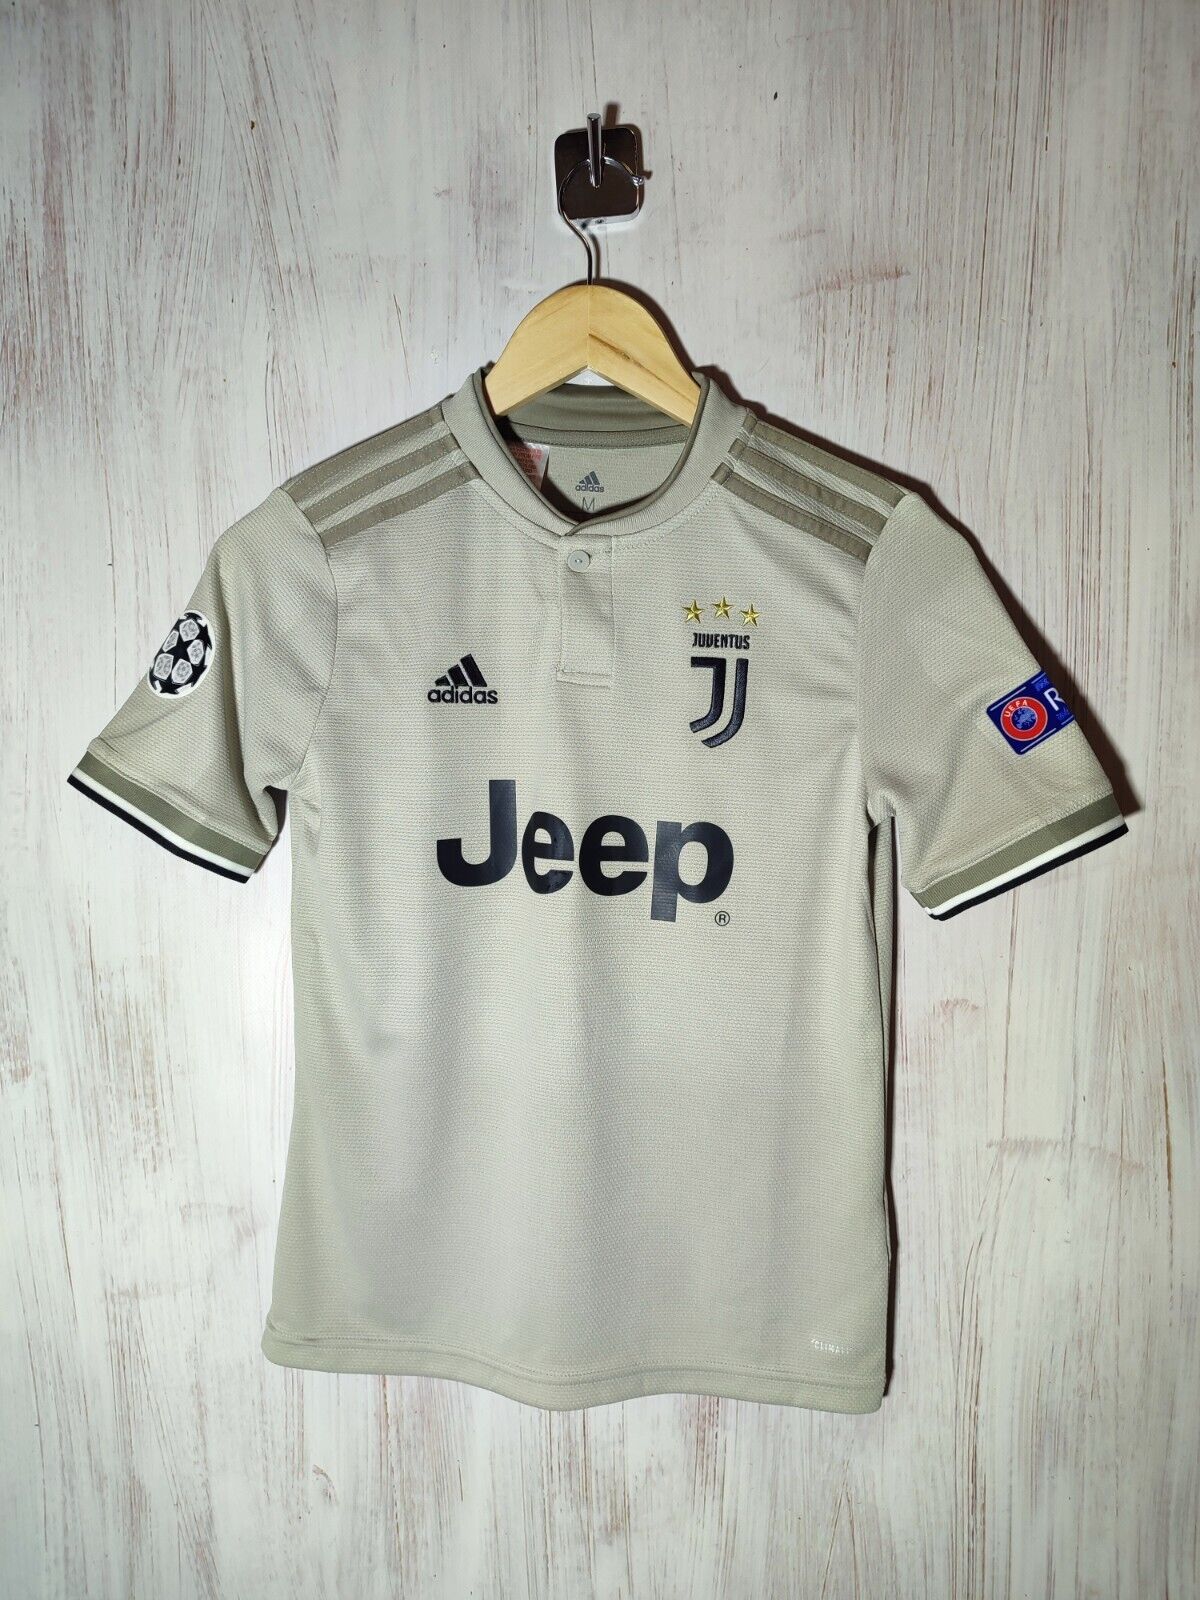 Kids 11-12y Juventus 2018 2019 away Sz M Adidas shirt jersey soccer football kit